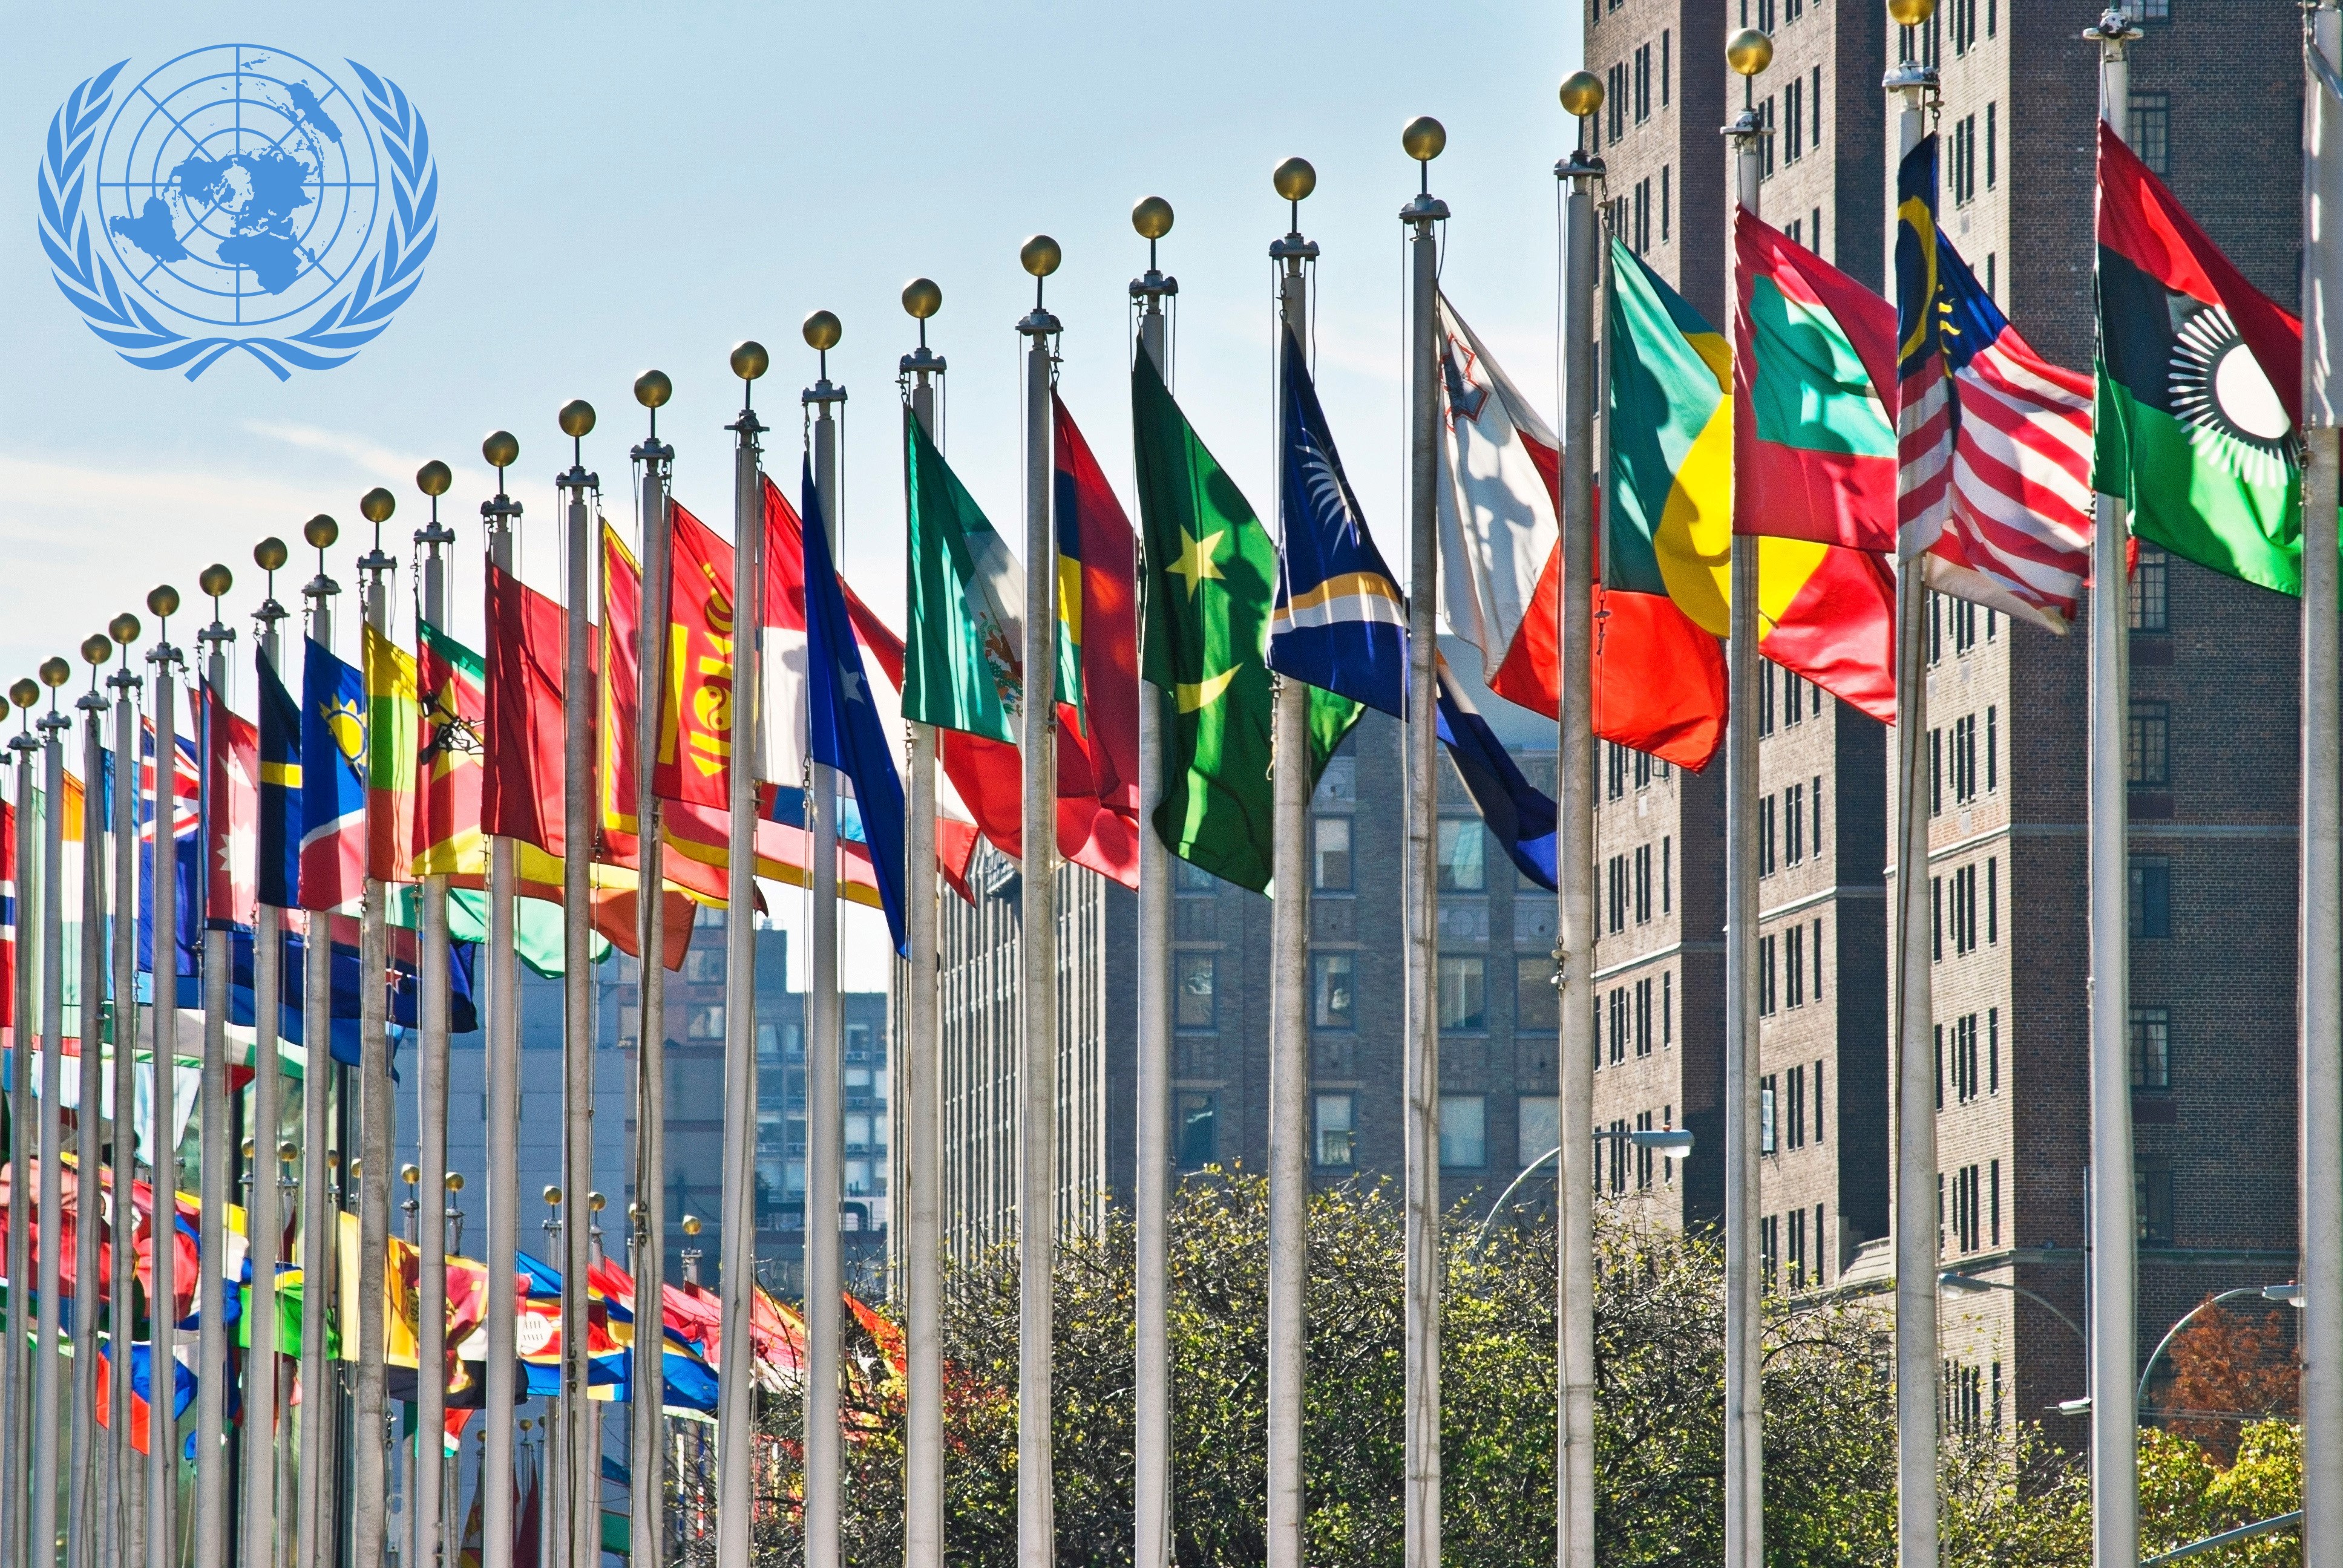 Организация оон страны. Здание ООН В Нью-Йорке флаги. Здание ООН (организации Объединённых наций) в Нью-Йорке. Флаги государств ООН. Страны ООН флаги РФ.